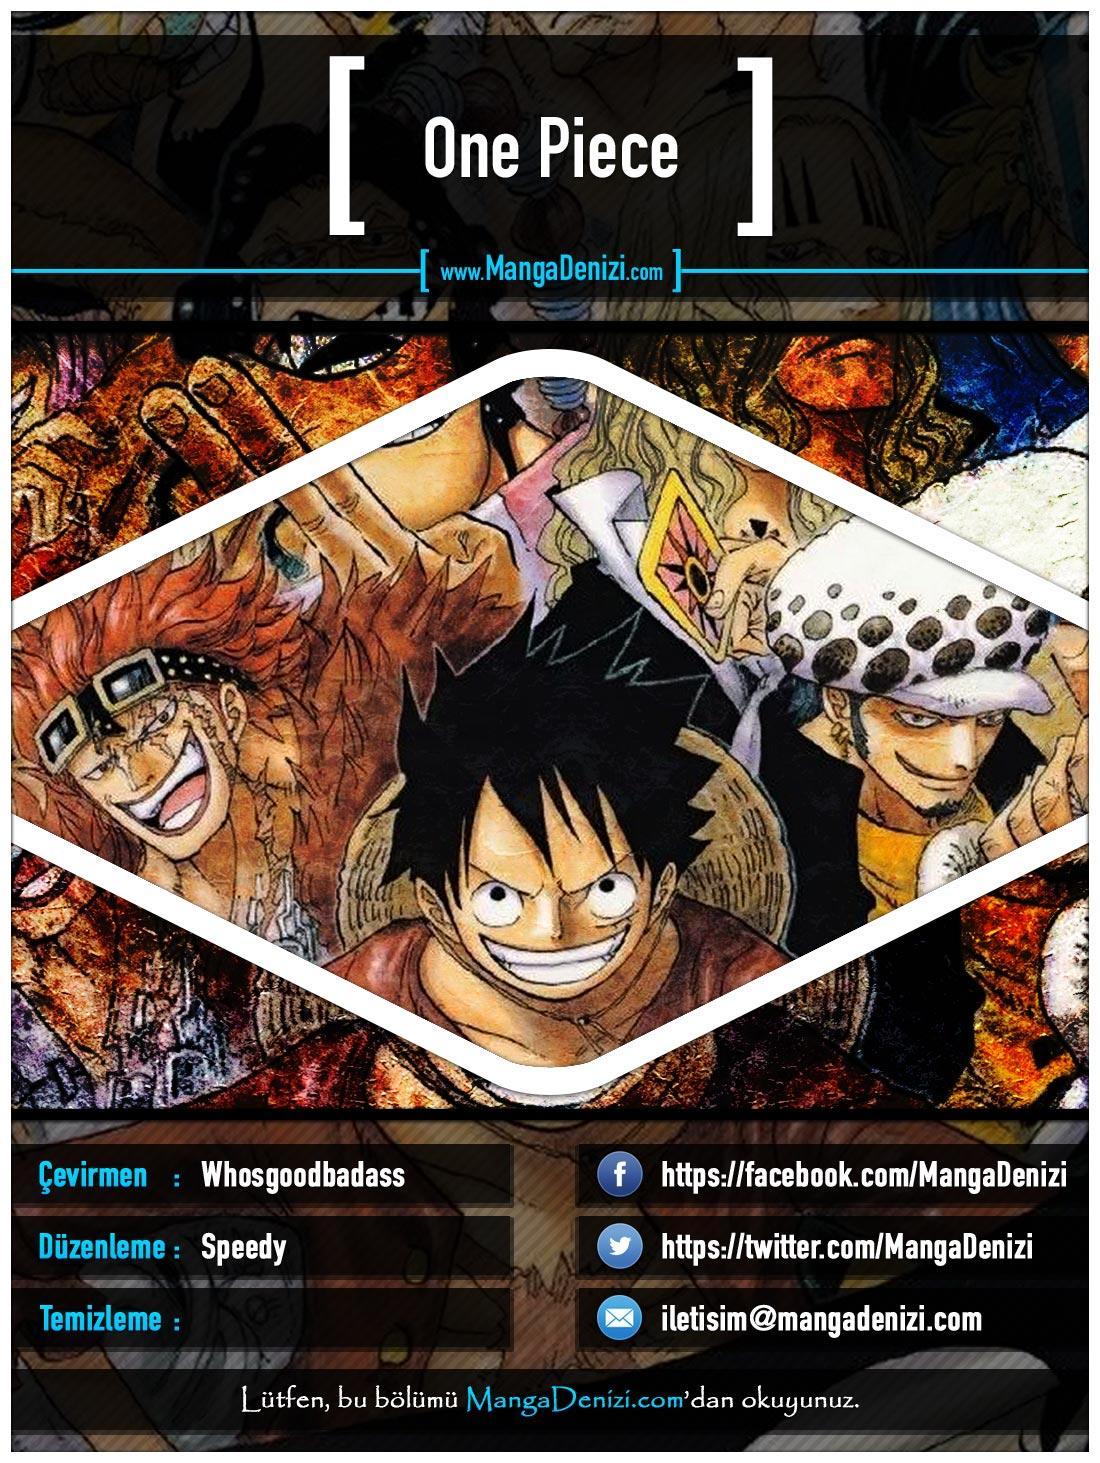 One Piece [Renkli] mangasının 0494 bölümünün 1. sayfasını okuyorsunuz.